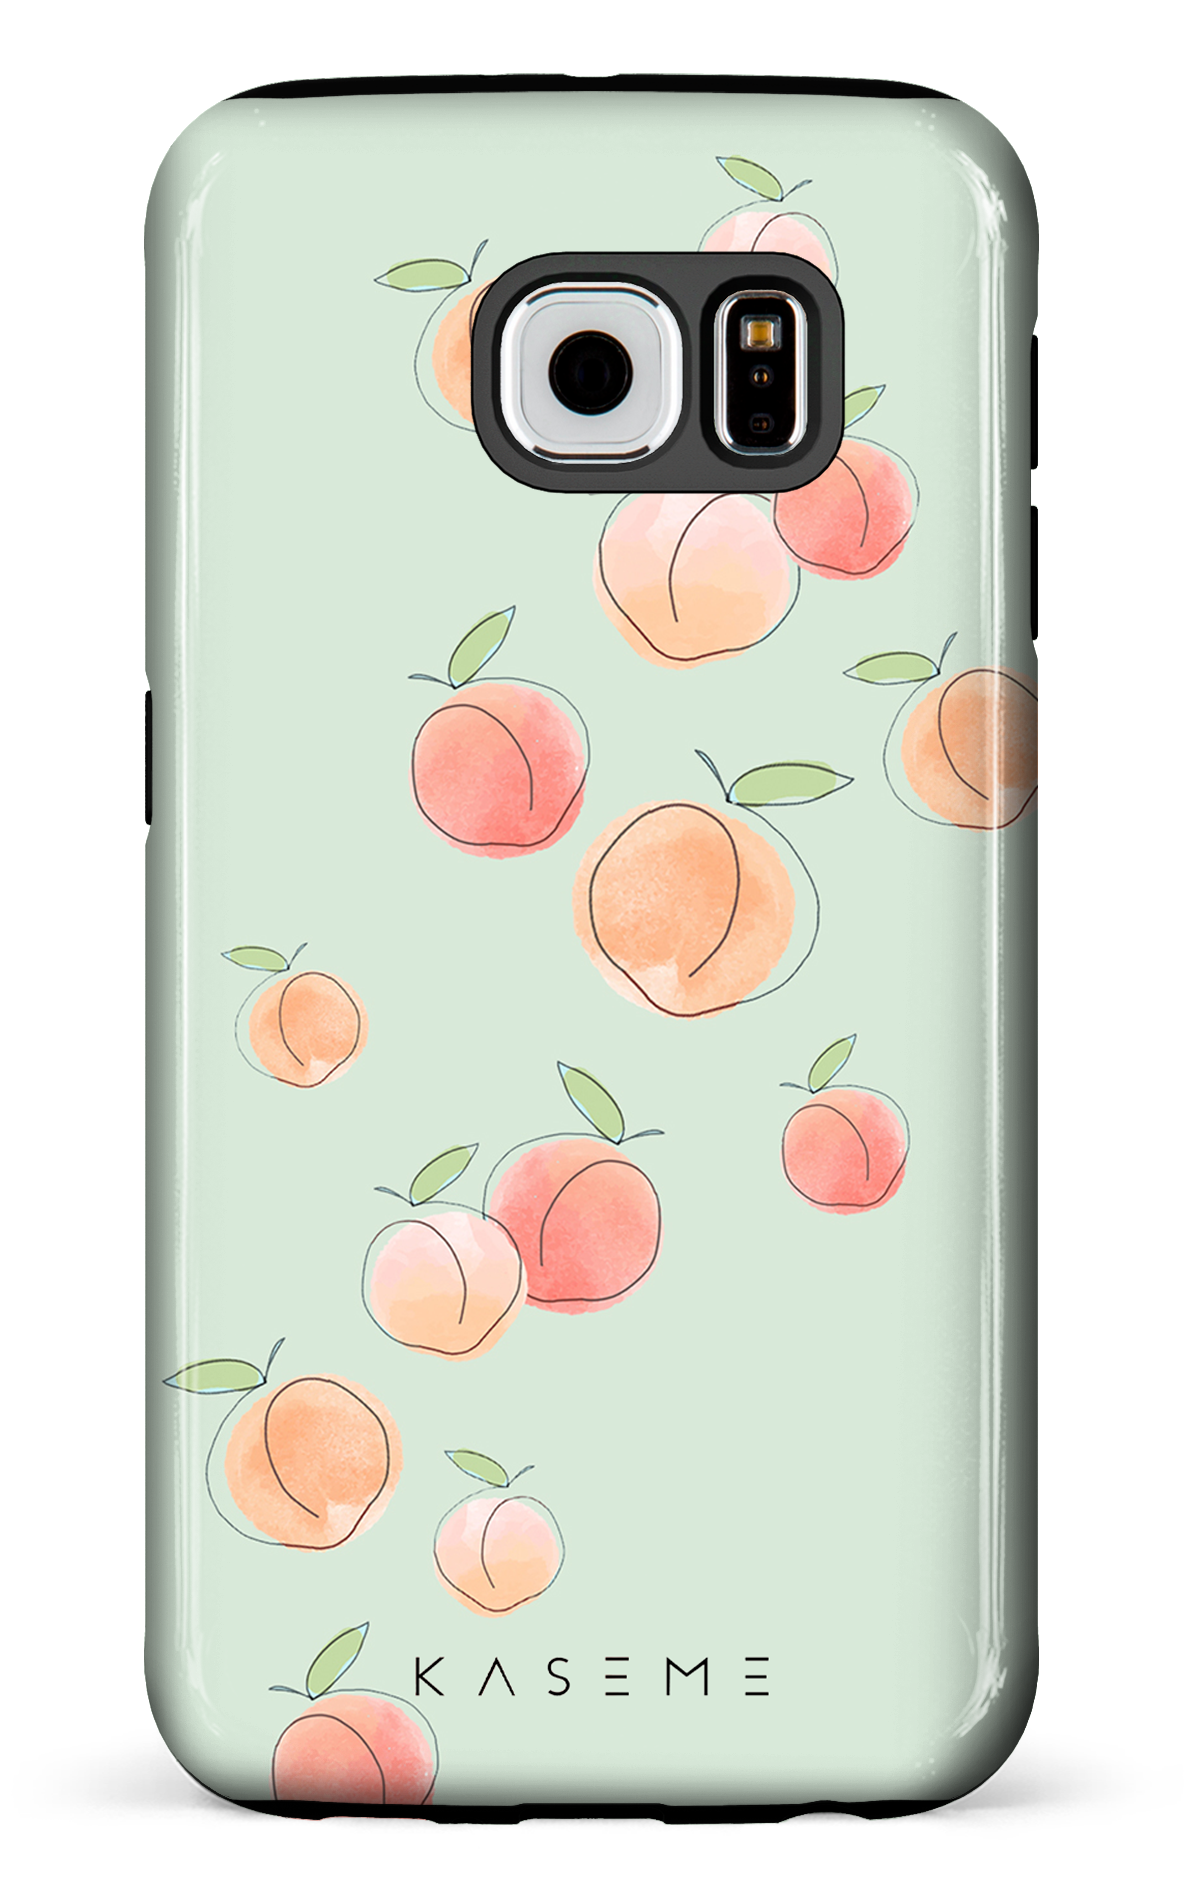 Peachy green - Galaxy S6